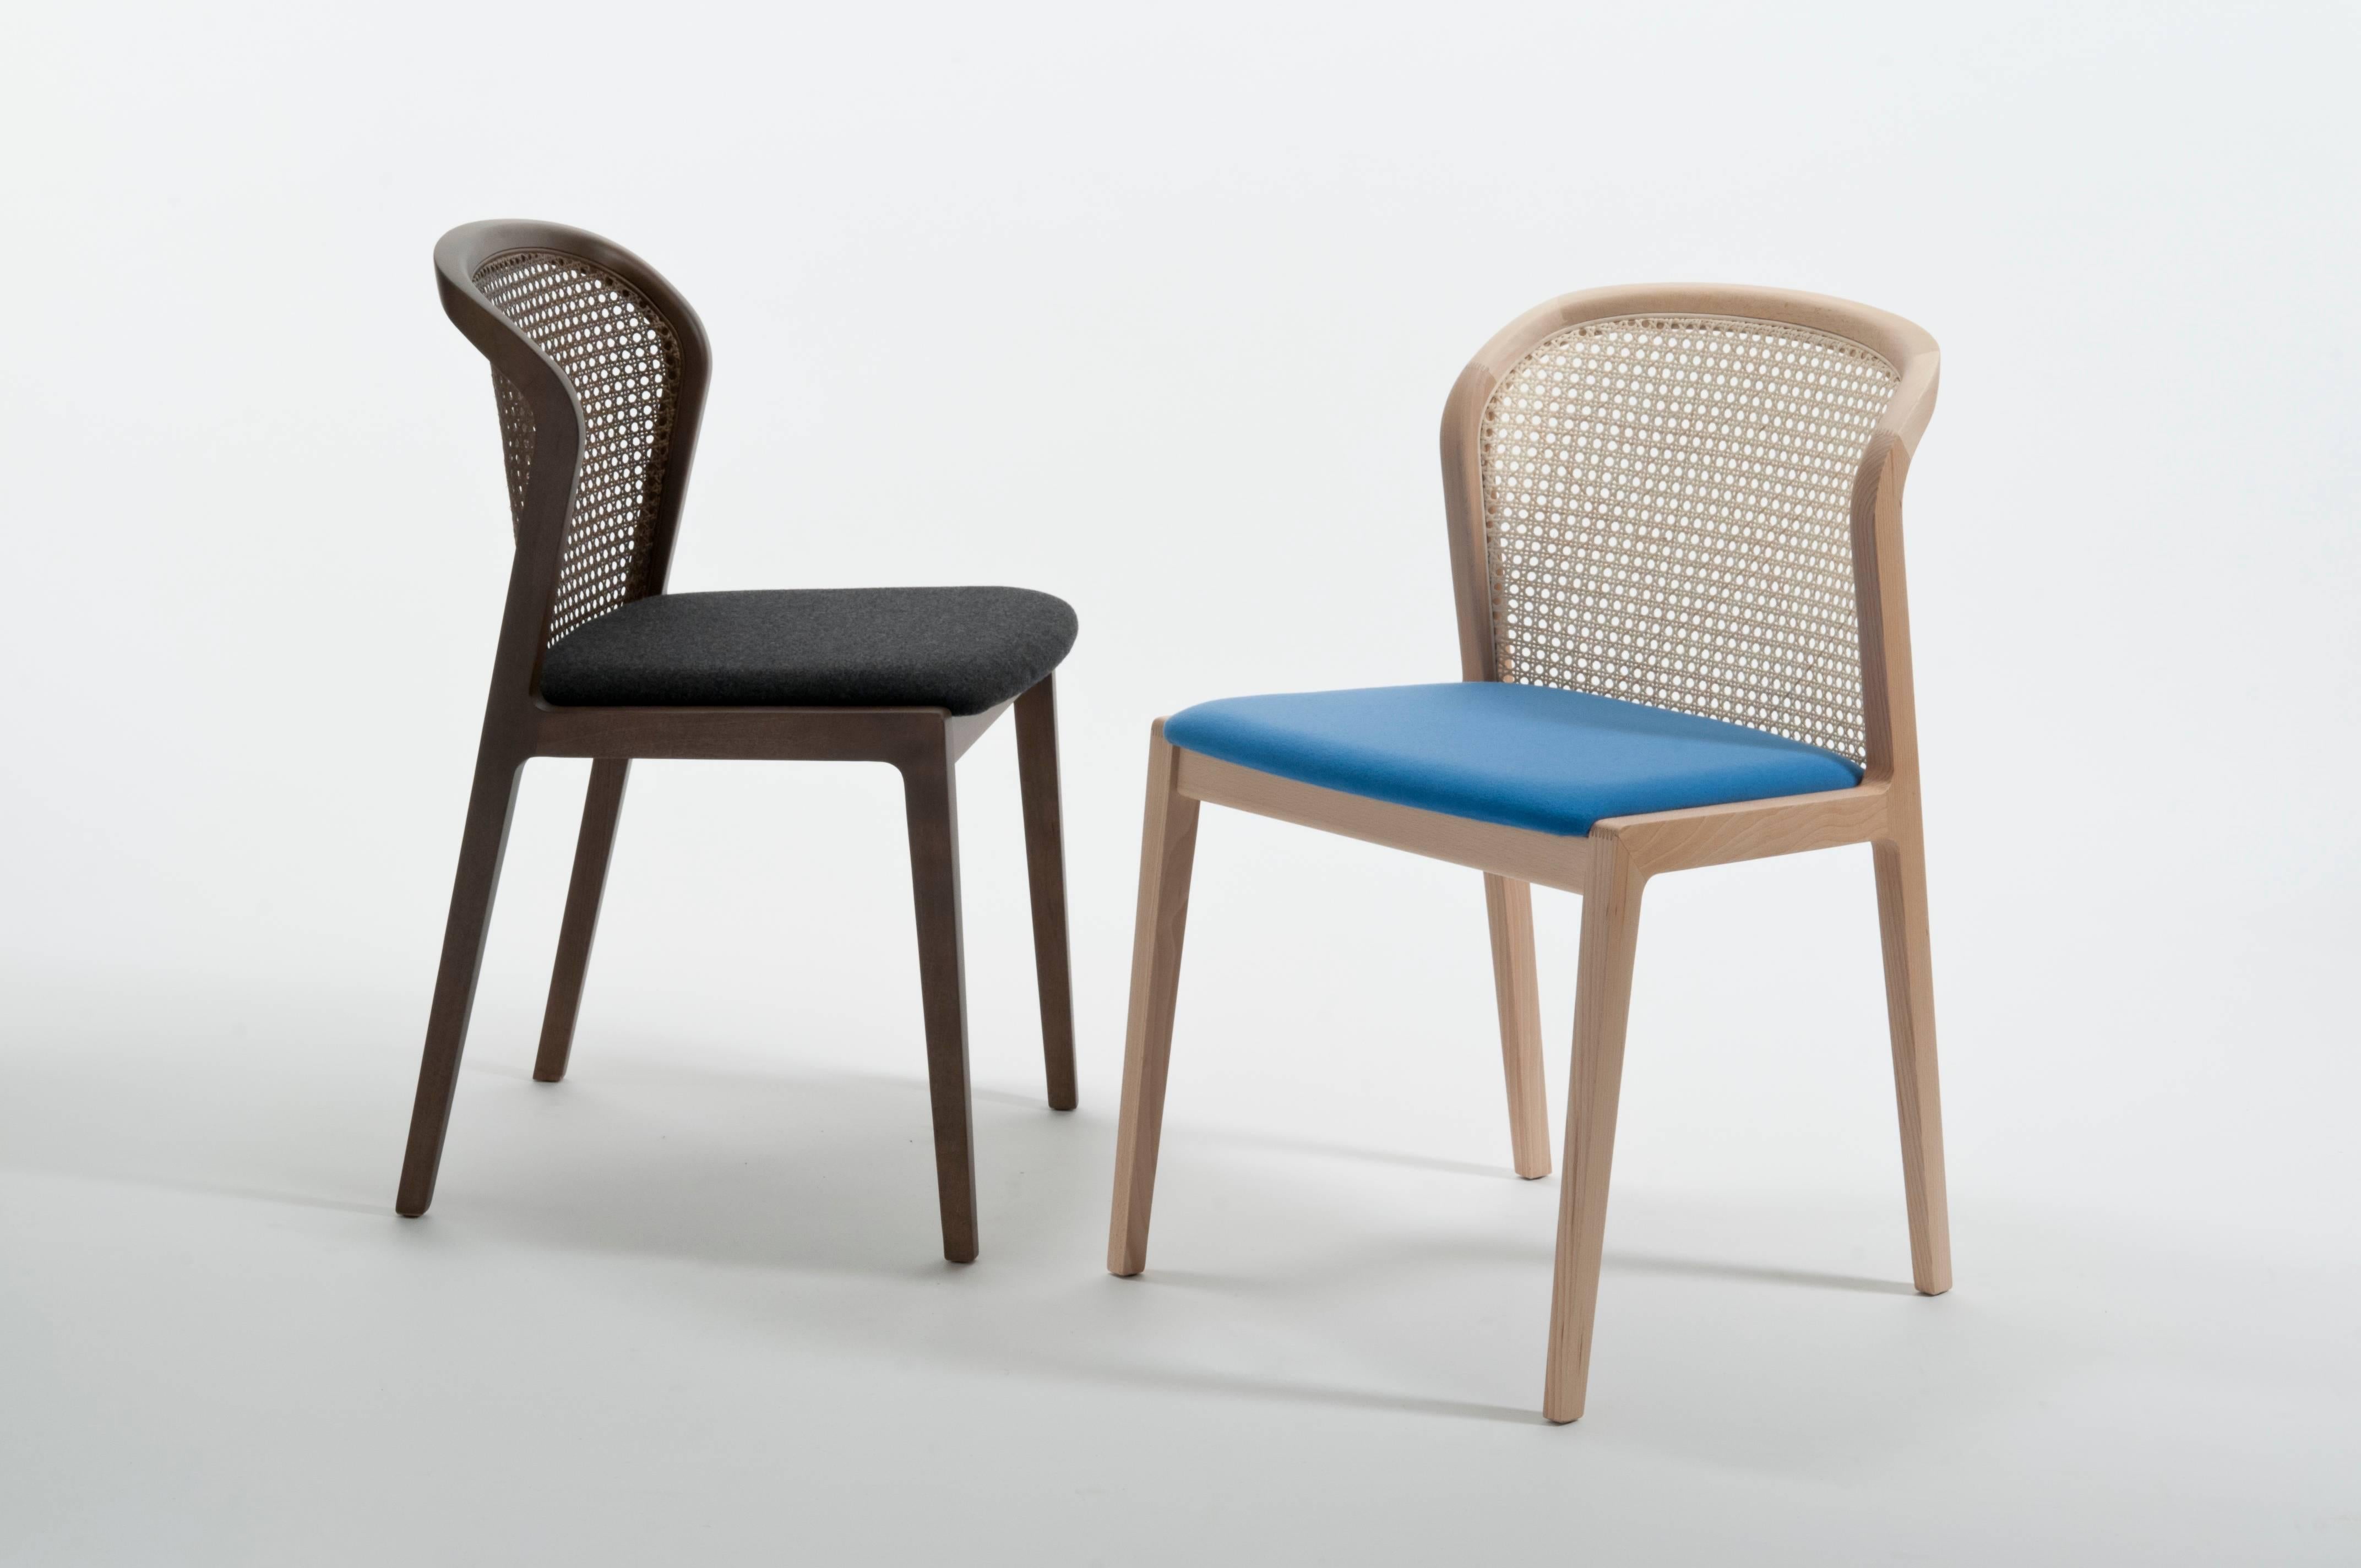 Paille Chaise Vienna, Design/One contemporain inspiré des chaises traditionnelles en paille en vente